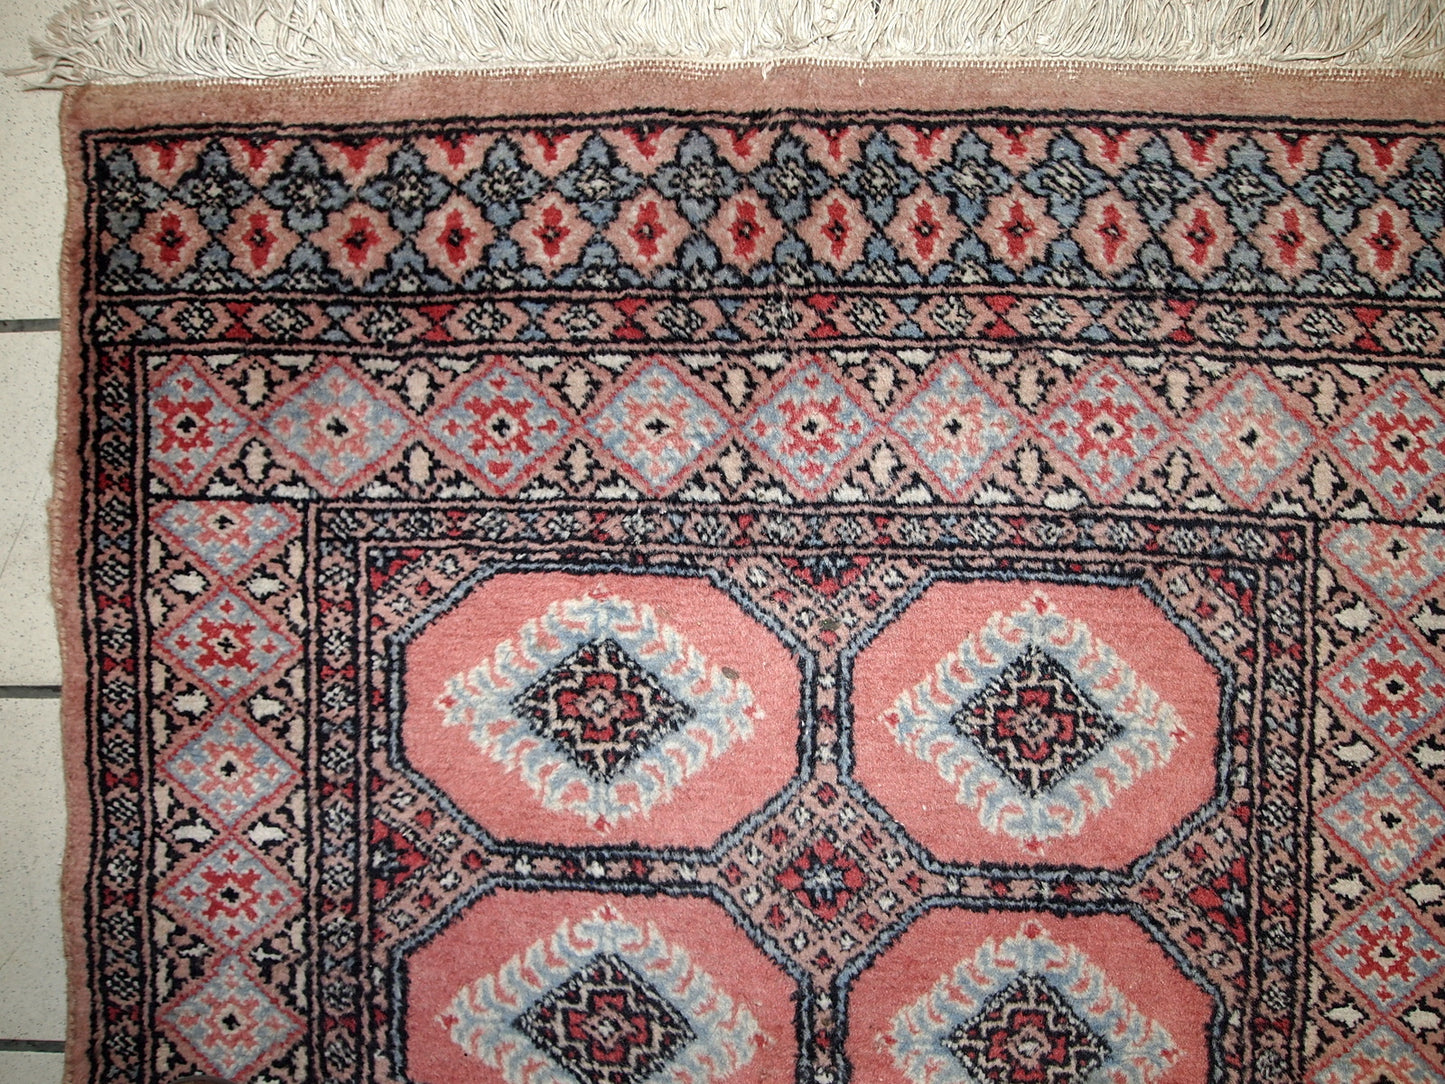 Handmade vintage Uzbek Bukhara rug 2.6' x 3.8' (81cm x 118cm) 1960s - 1C618